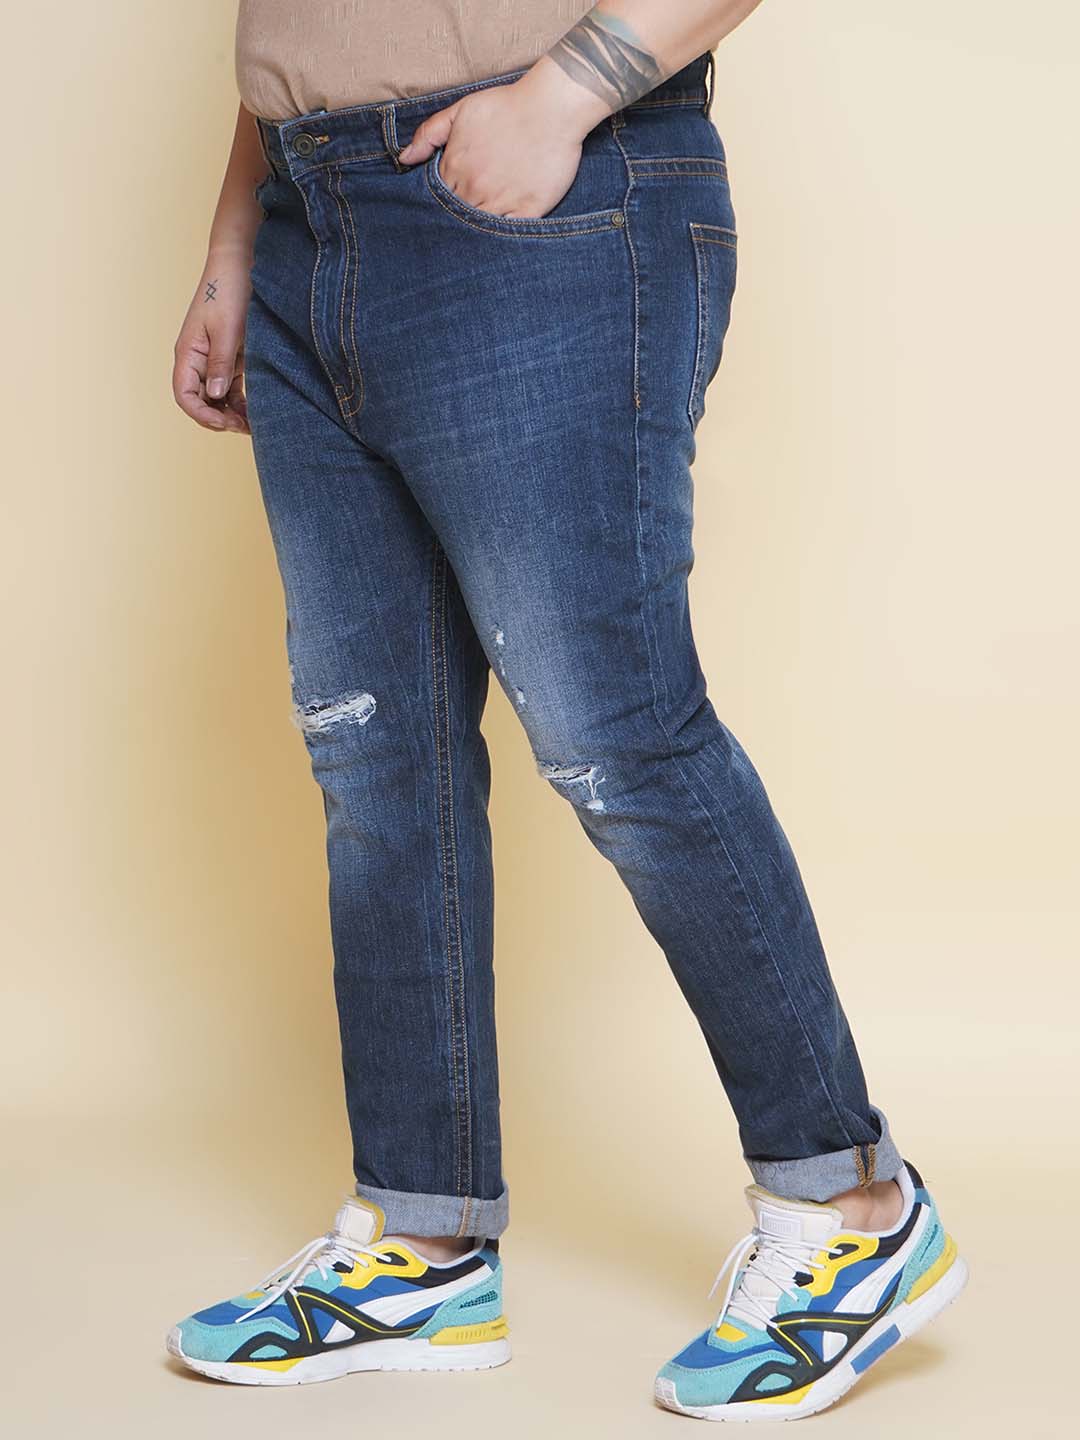 bottomwear/jeans/JPJ12403/jpj12403-4.jpg